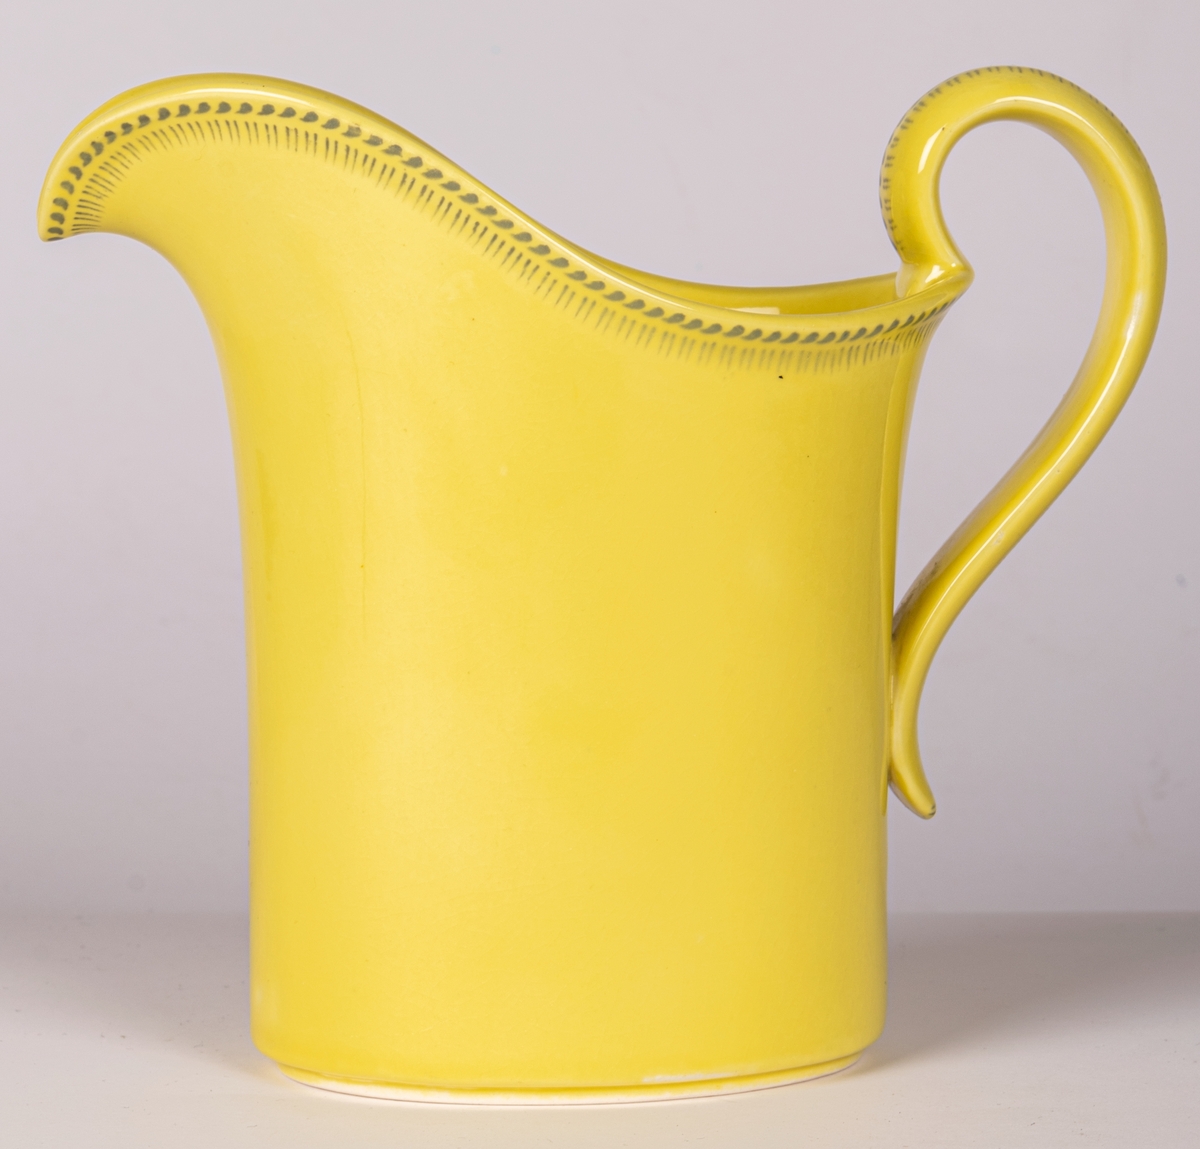 Tillbringare eller kanna i flintgods med hänkel, citrongul glasyr/dekor "Lemona", modell AT. Form och dekor Arthur Percy 1943 för Gefle Porslin.